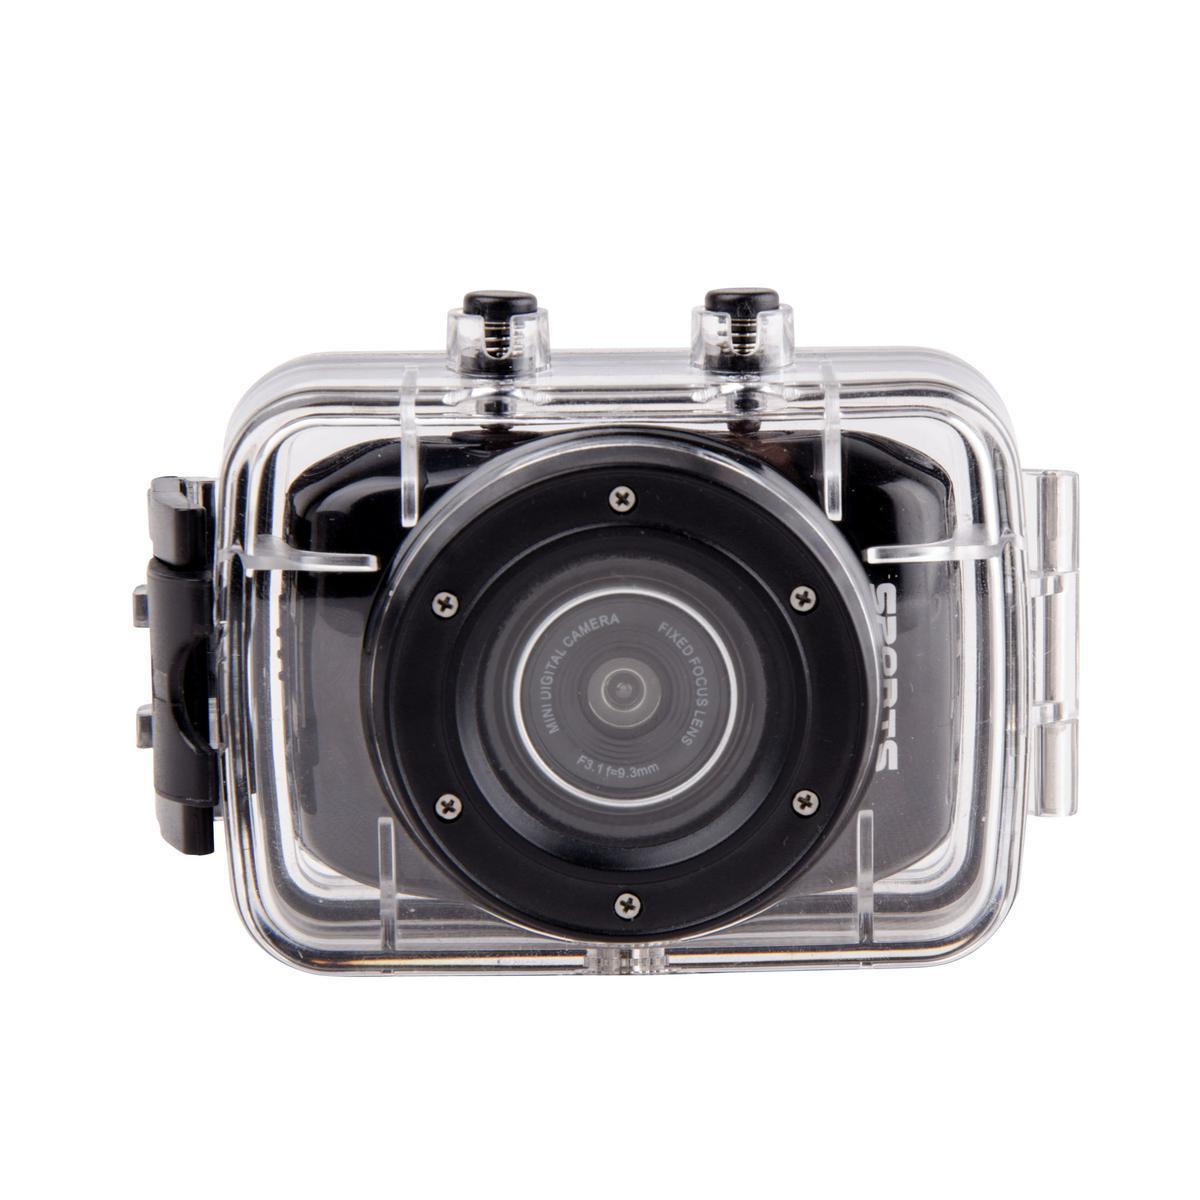 Caméra sport écran tactile - Plastique - 6.6 x 2.7 x 4.3 cm - Noir